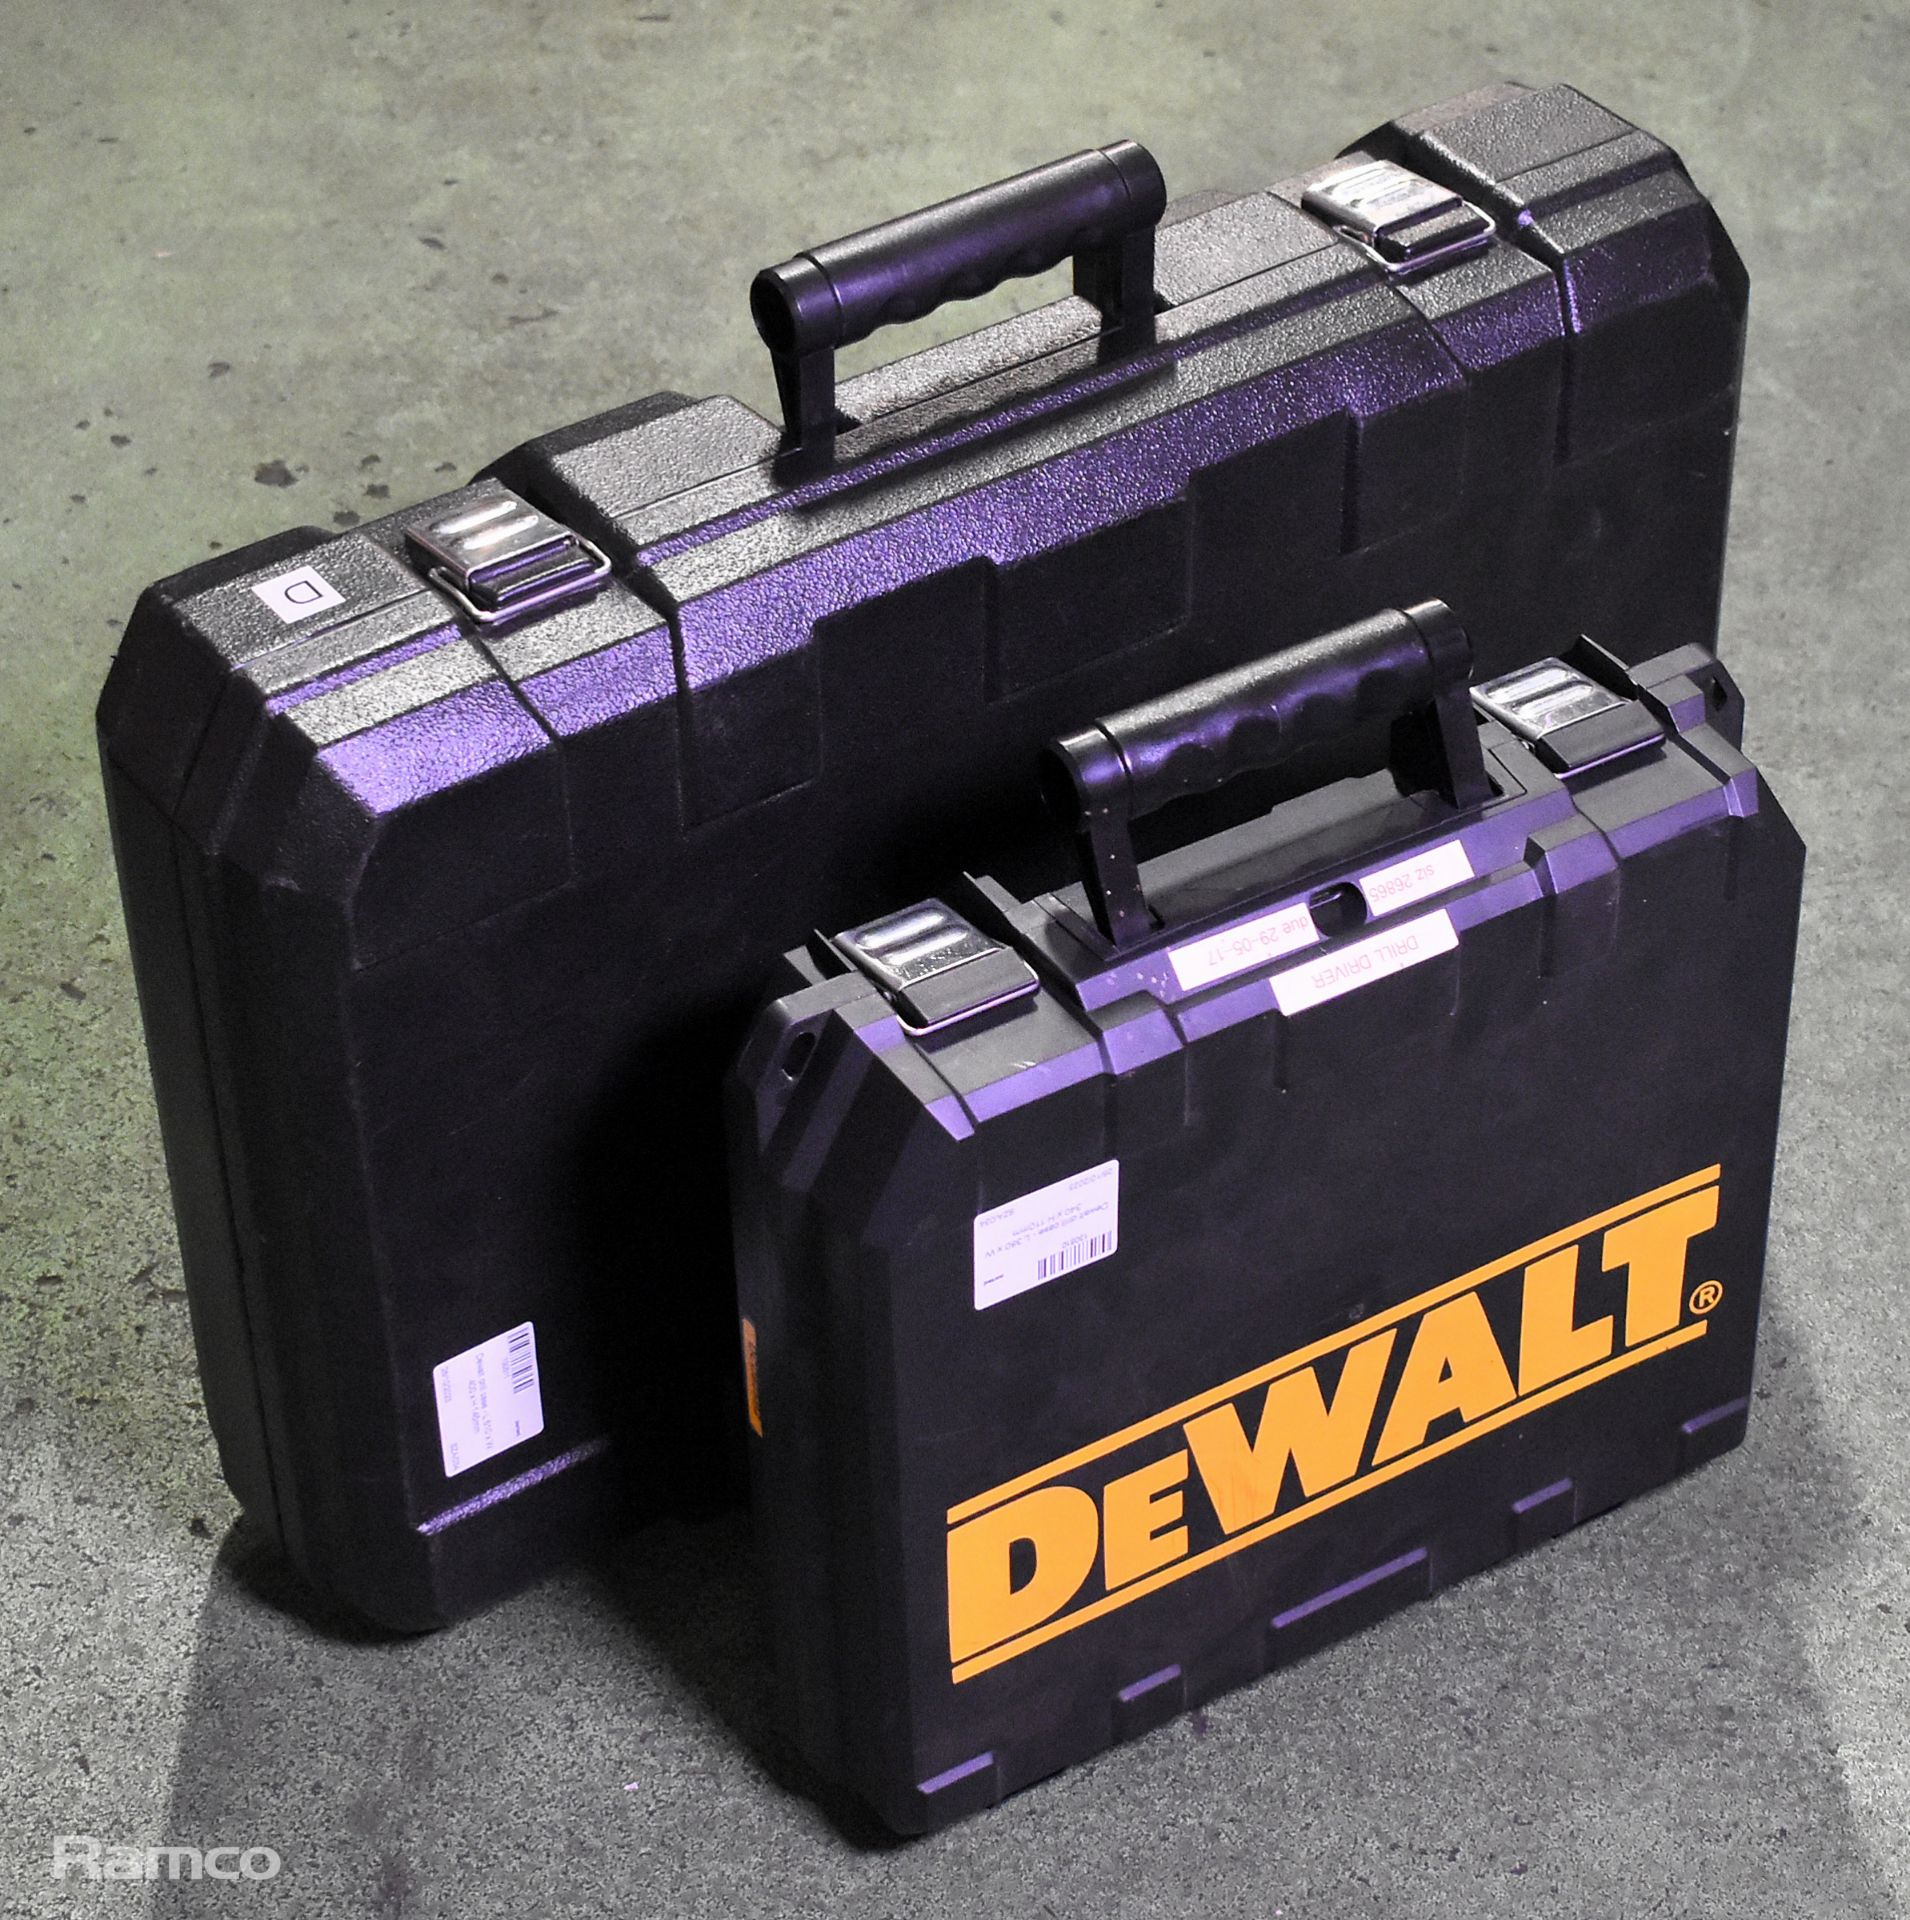 Dewalt drill case - L 380 x W 340 x H 110mm, Dewalt drill case - L 610 x W 400 x H 145mm - Image 5 of 5